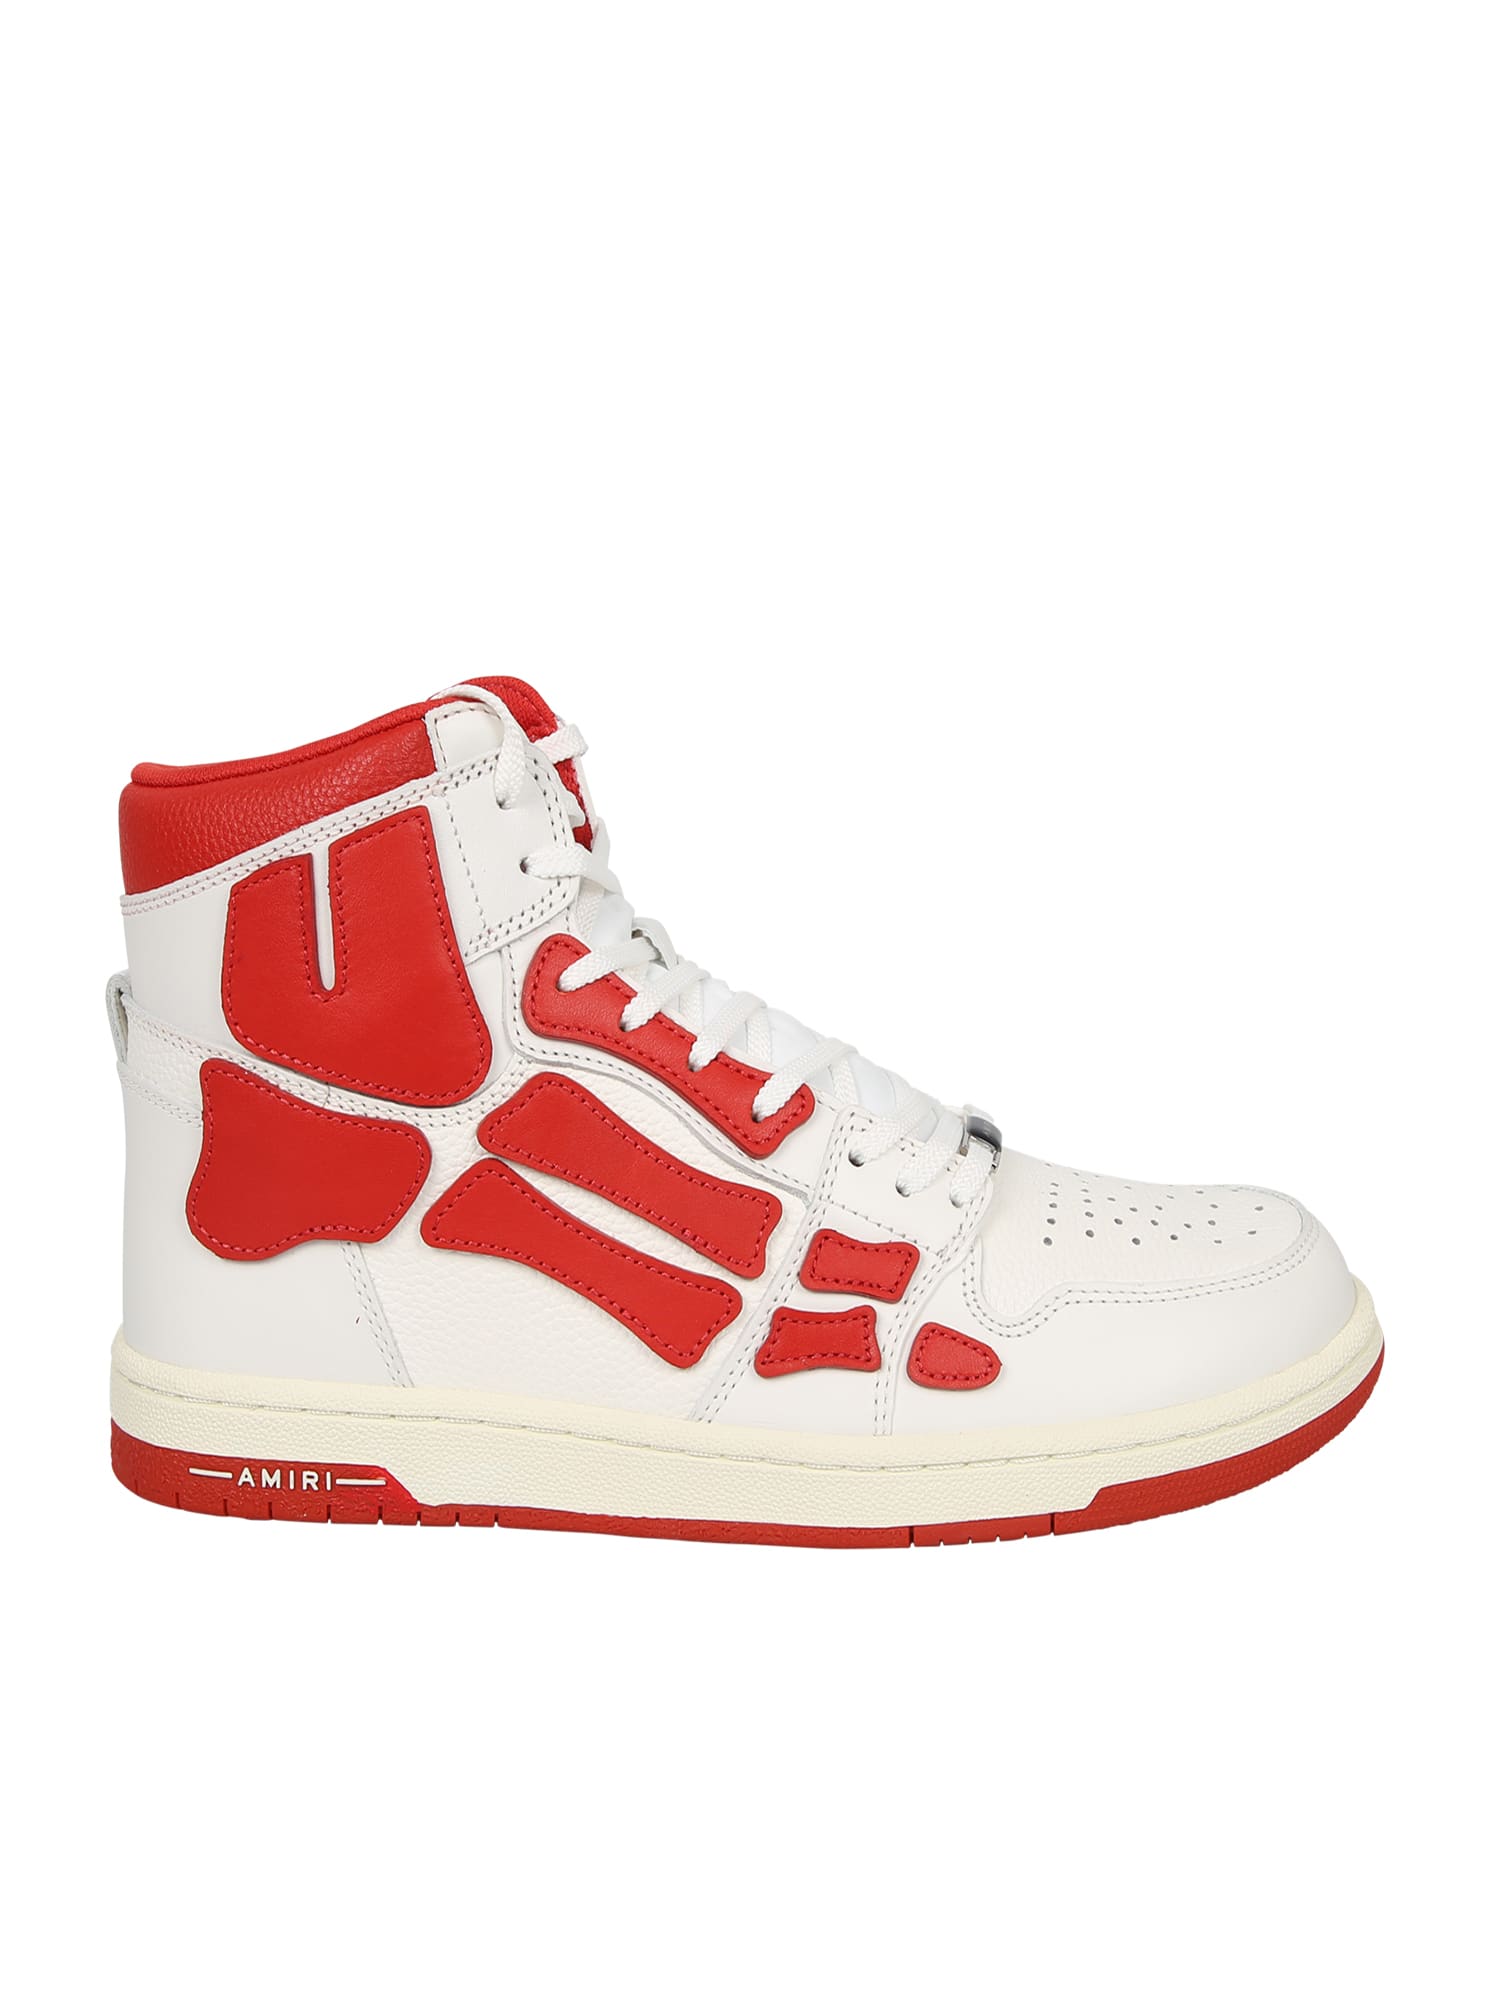 AMIRI Sneakers Skel Top High Bianco/rosso